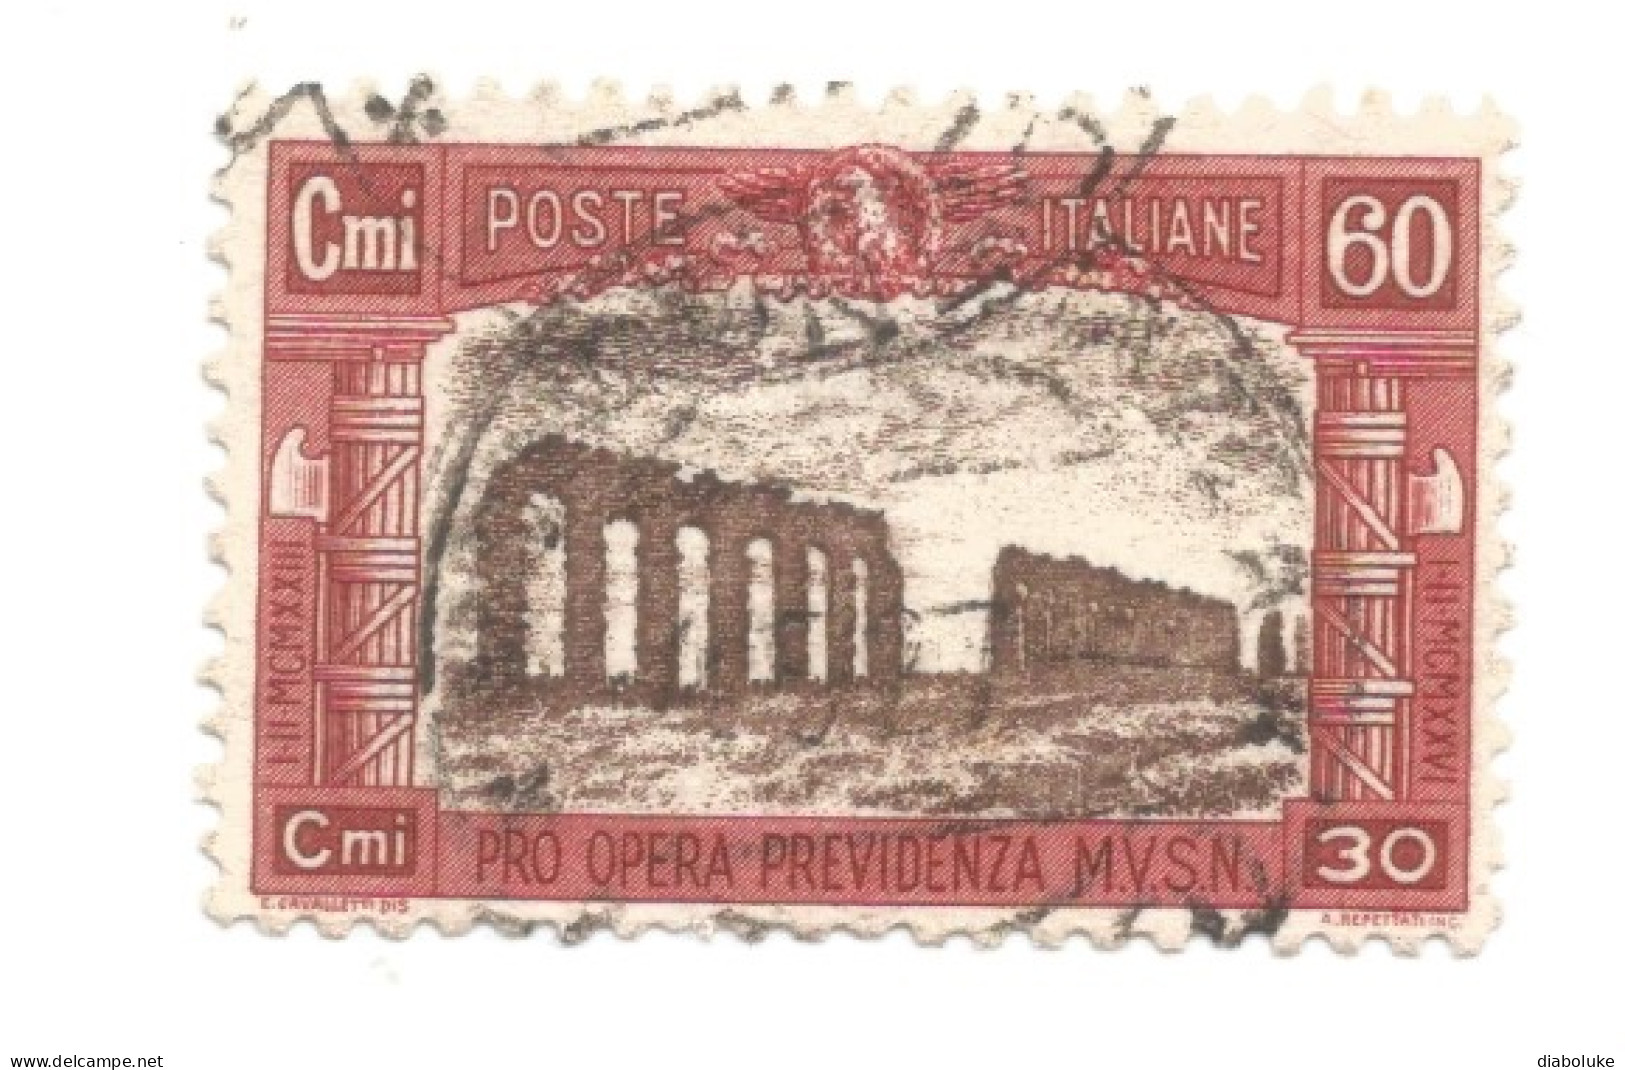 (REGNO D'ITALIA) 1926, PRO OPERA PREVIDENZIA MILIZIA - Serie Di 4 Francobolli Usati, Annulli Da Periziare - Airmail